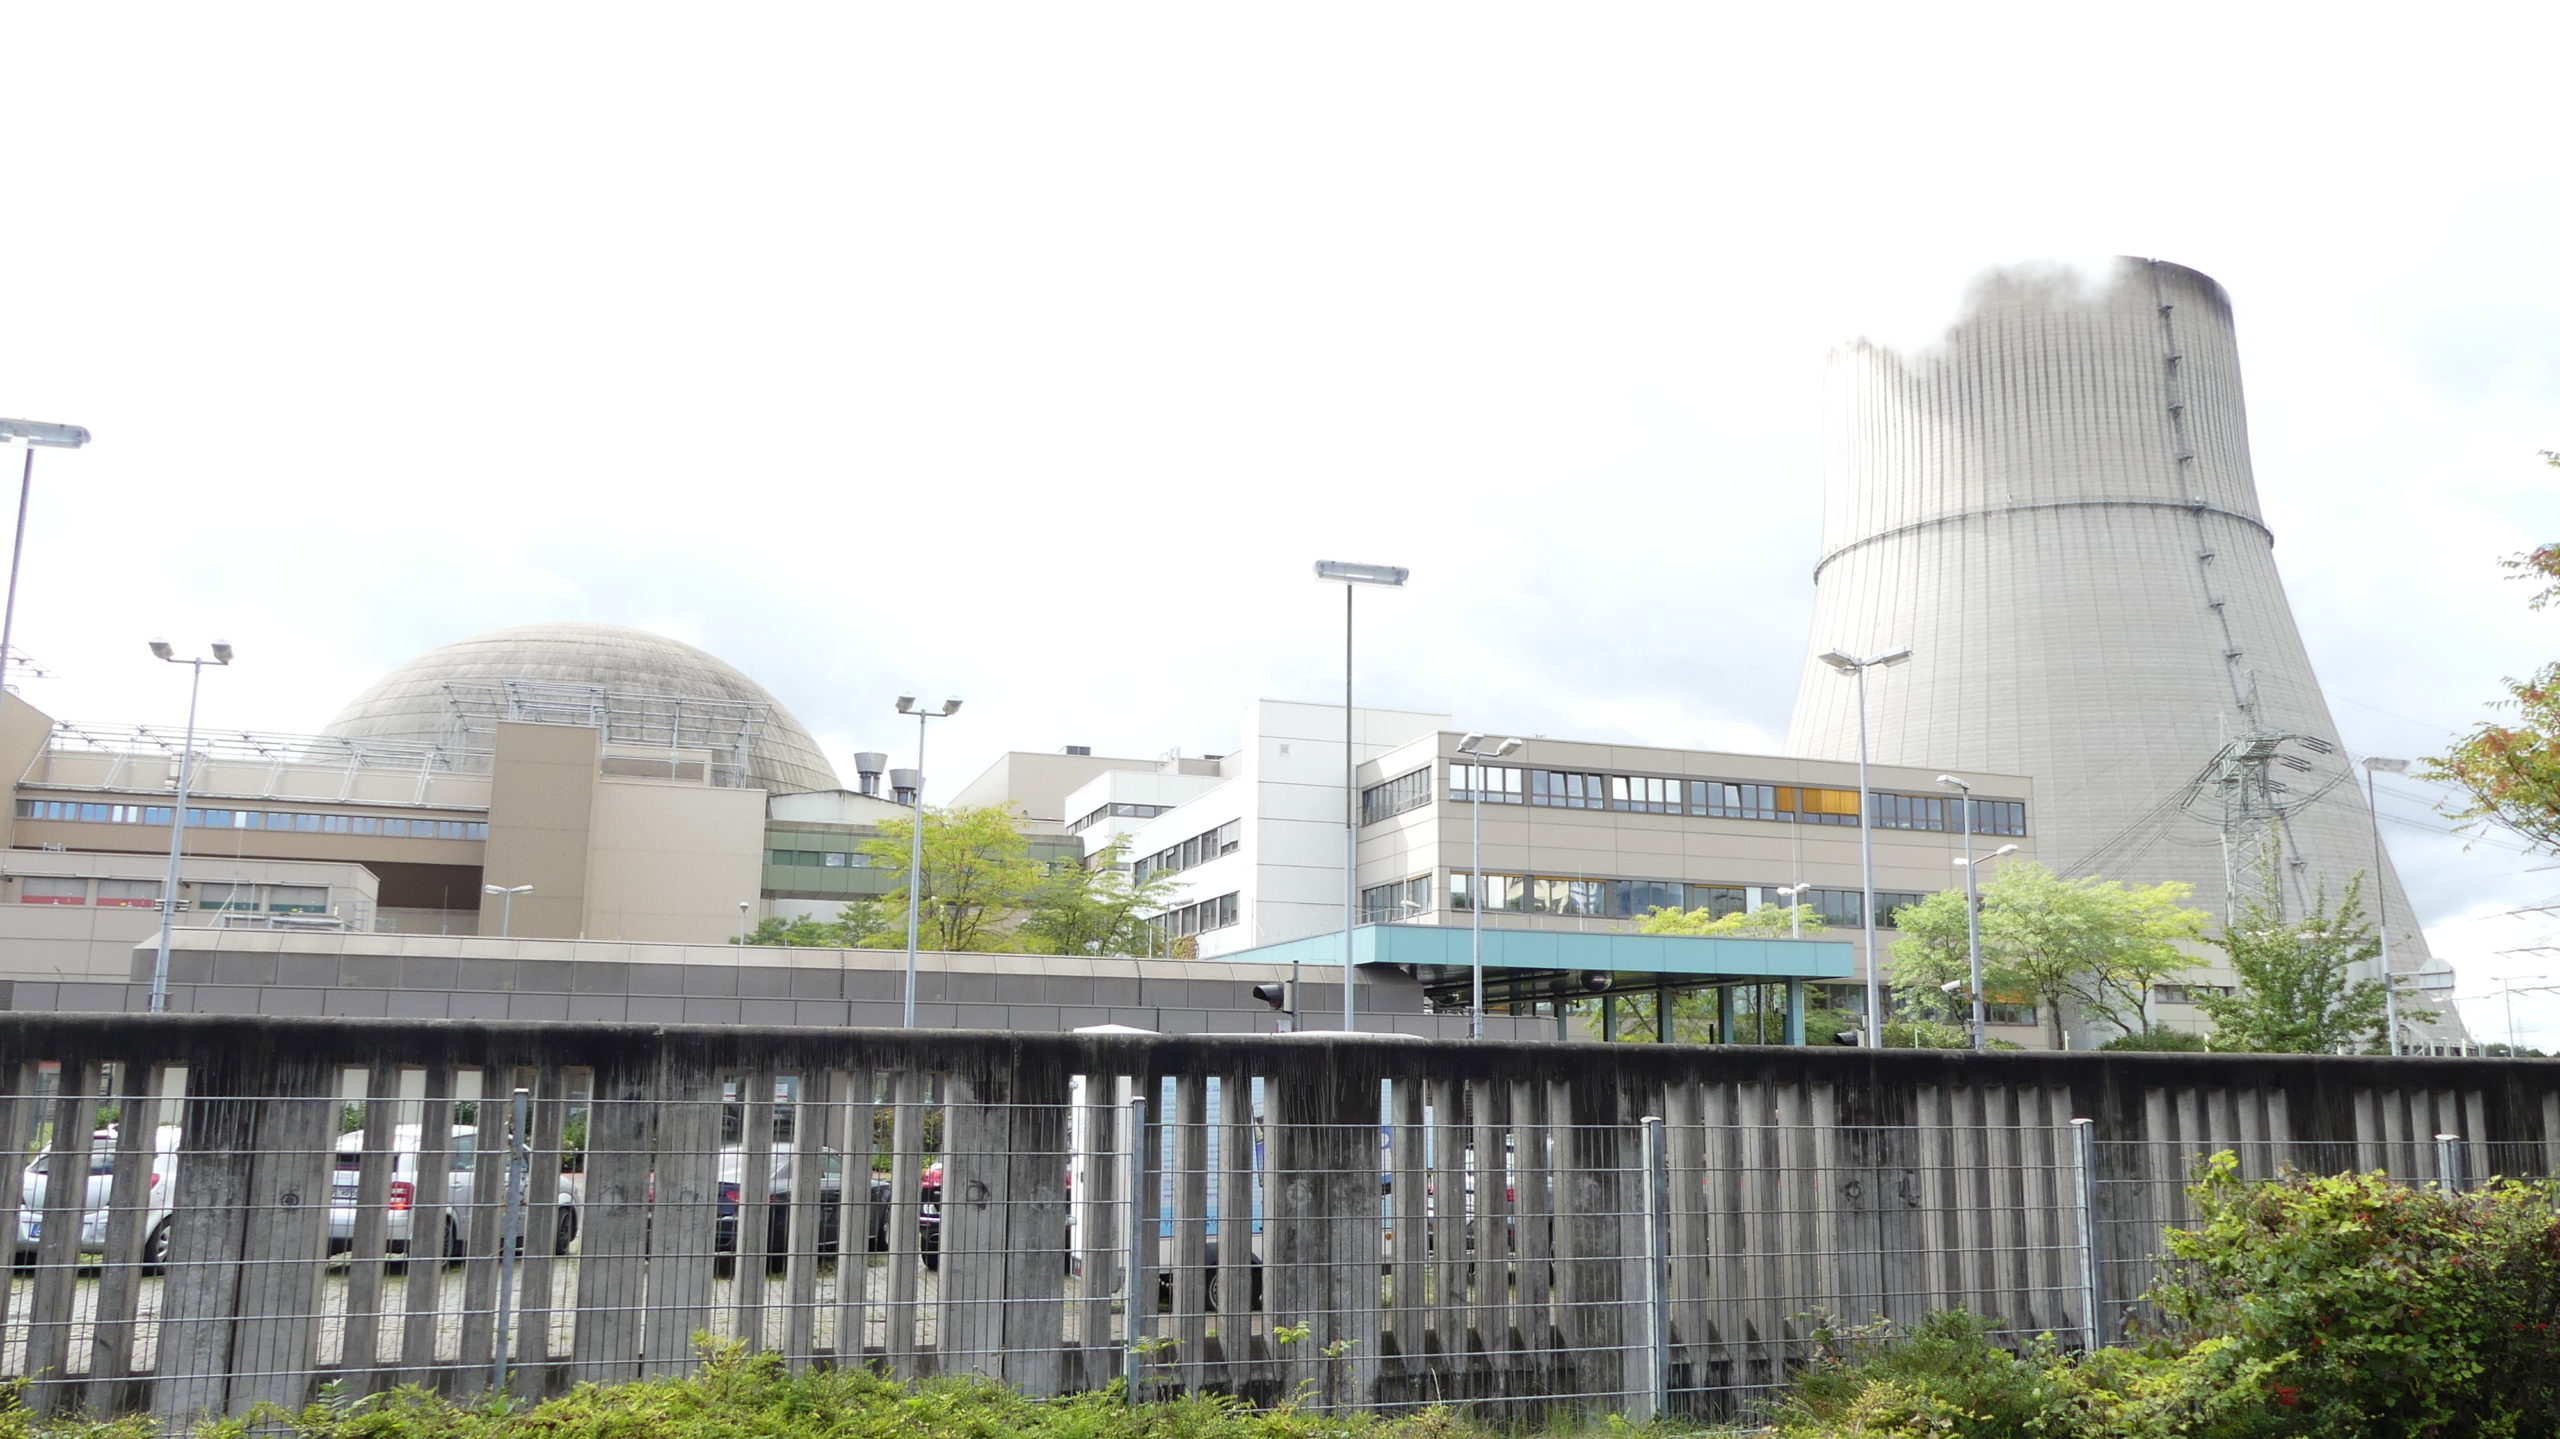 Rostige Rohre im AKW Lingen? Kein Sicherheitsrabatt für Alt-Reaktoren